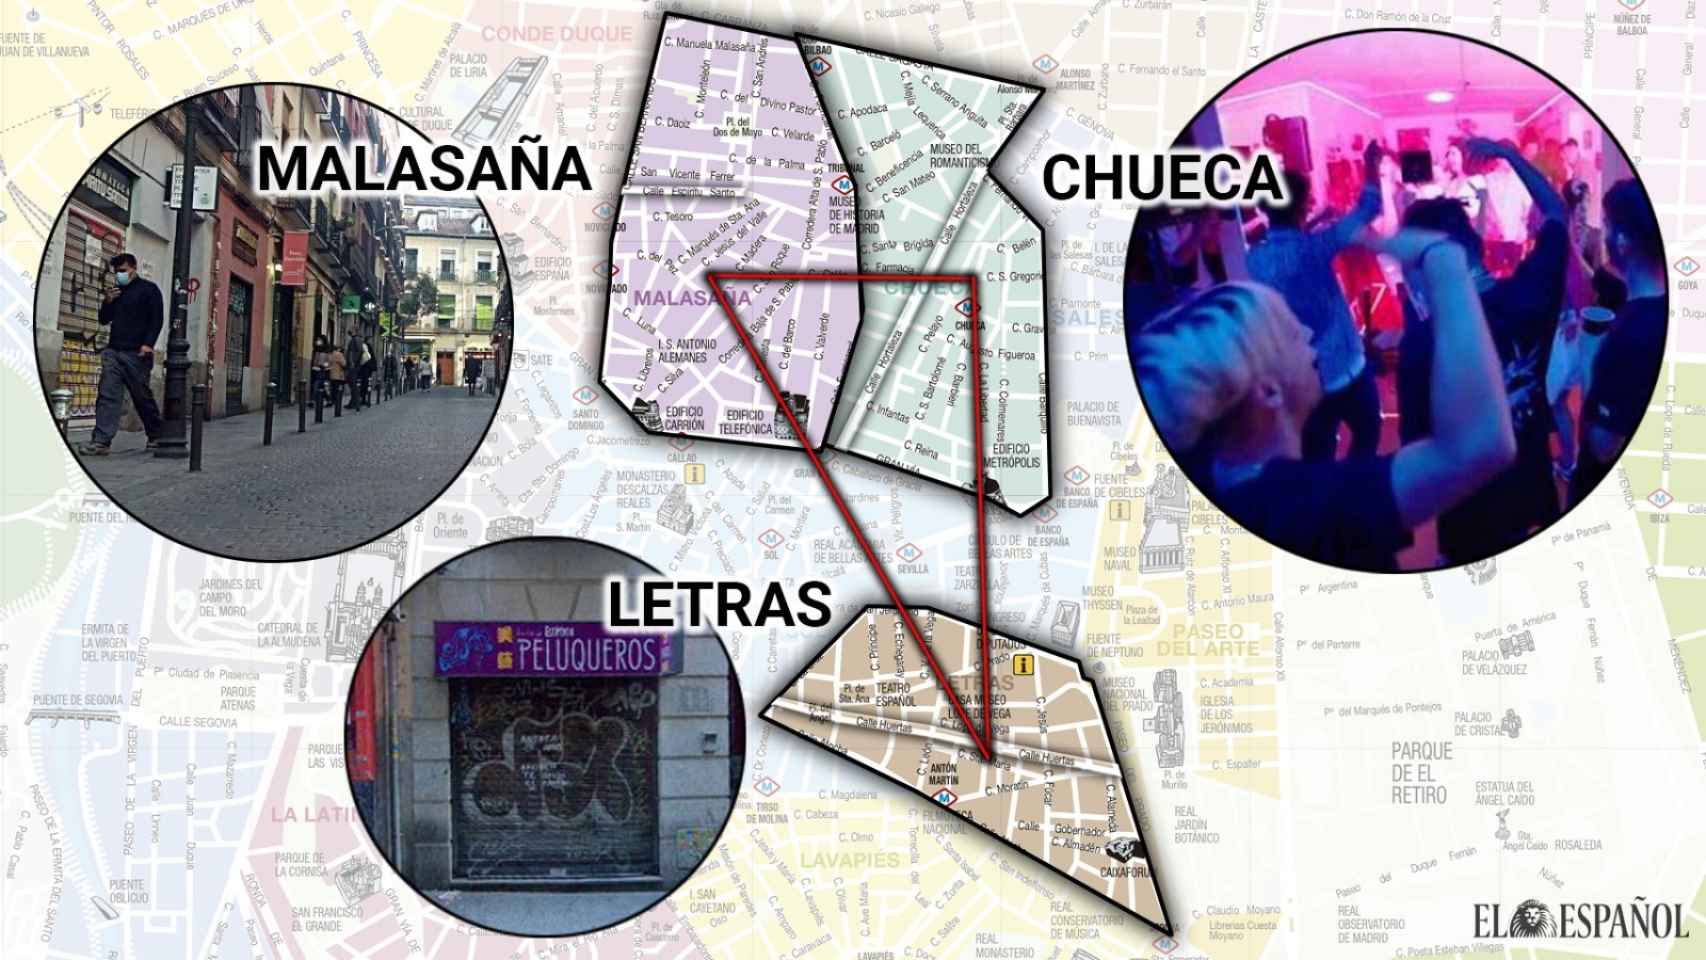 El triángulo de las fiestas ilegales en Madrid.